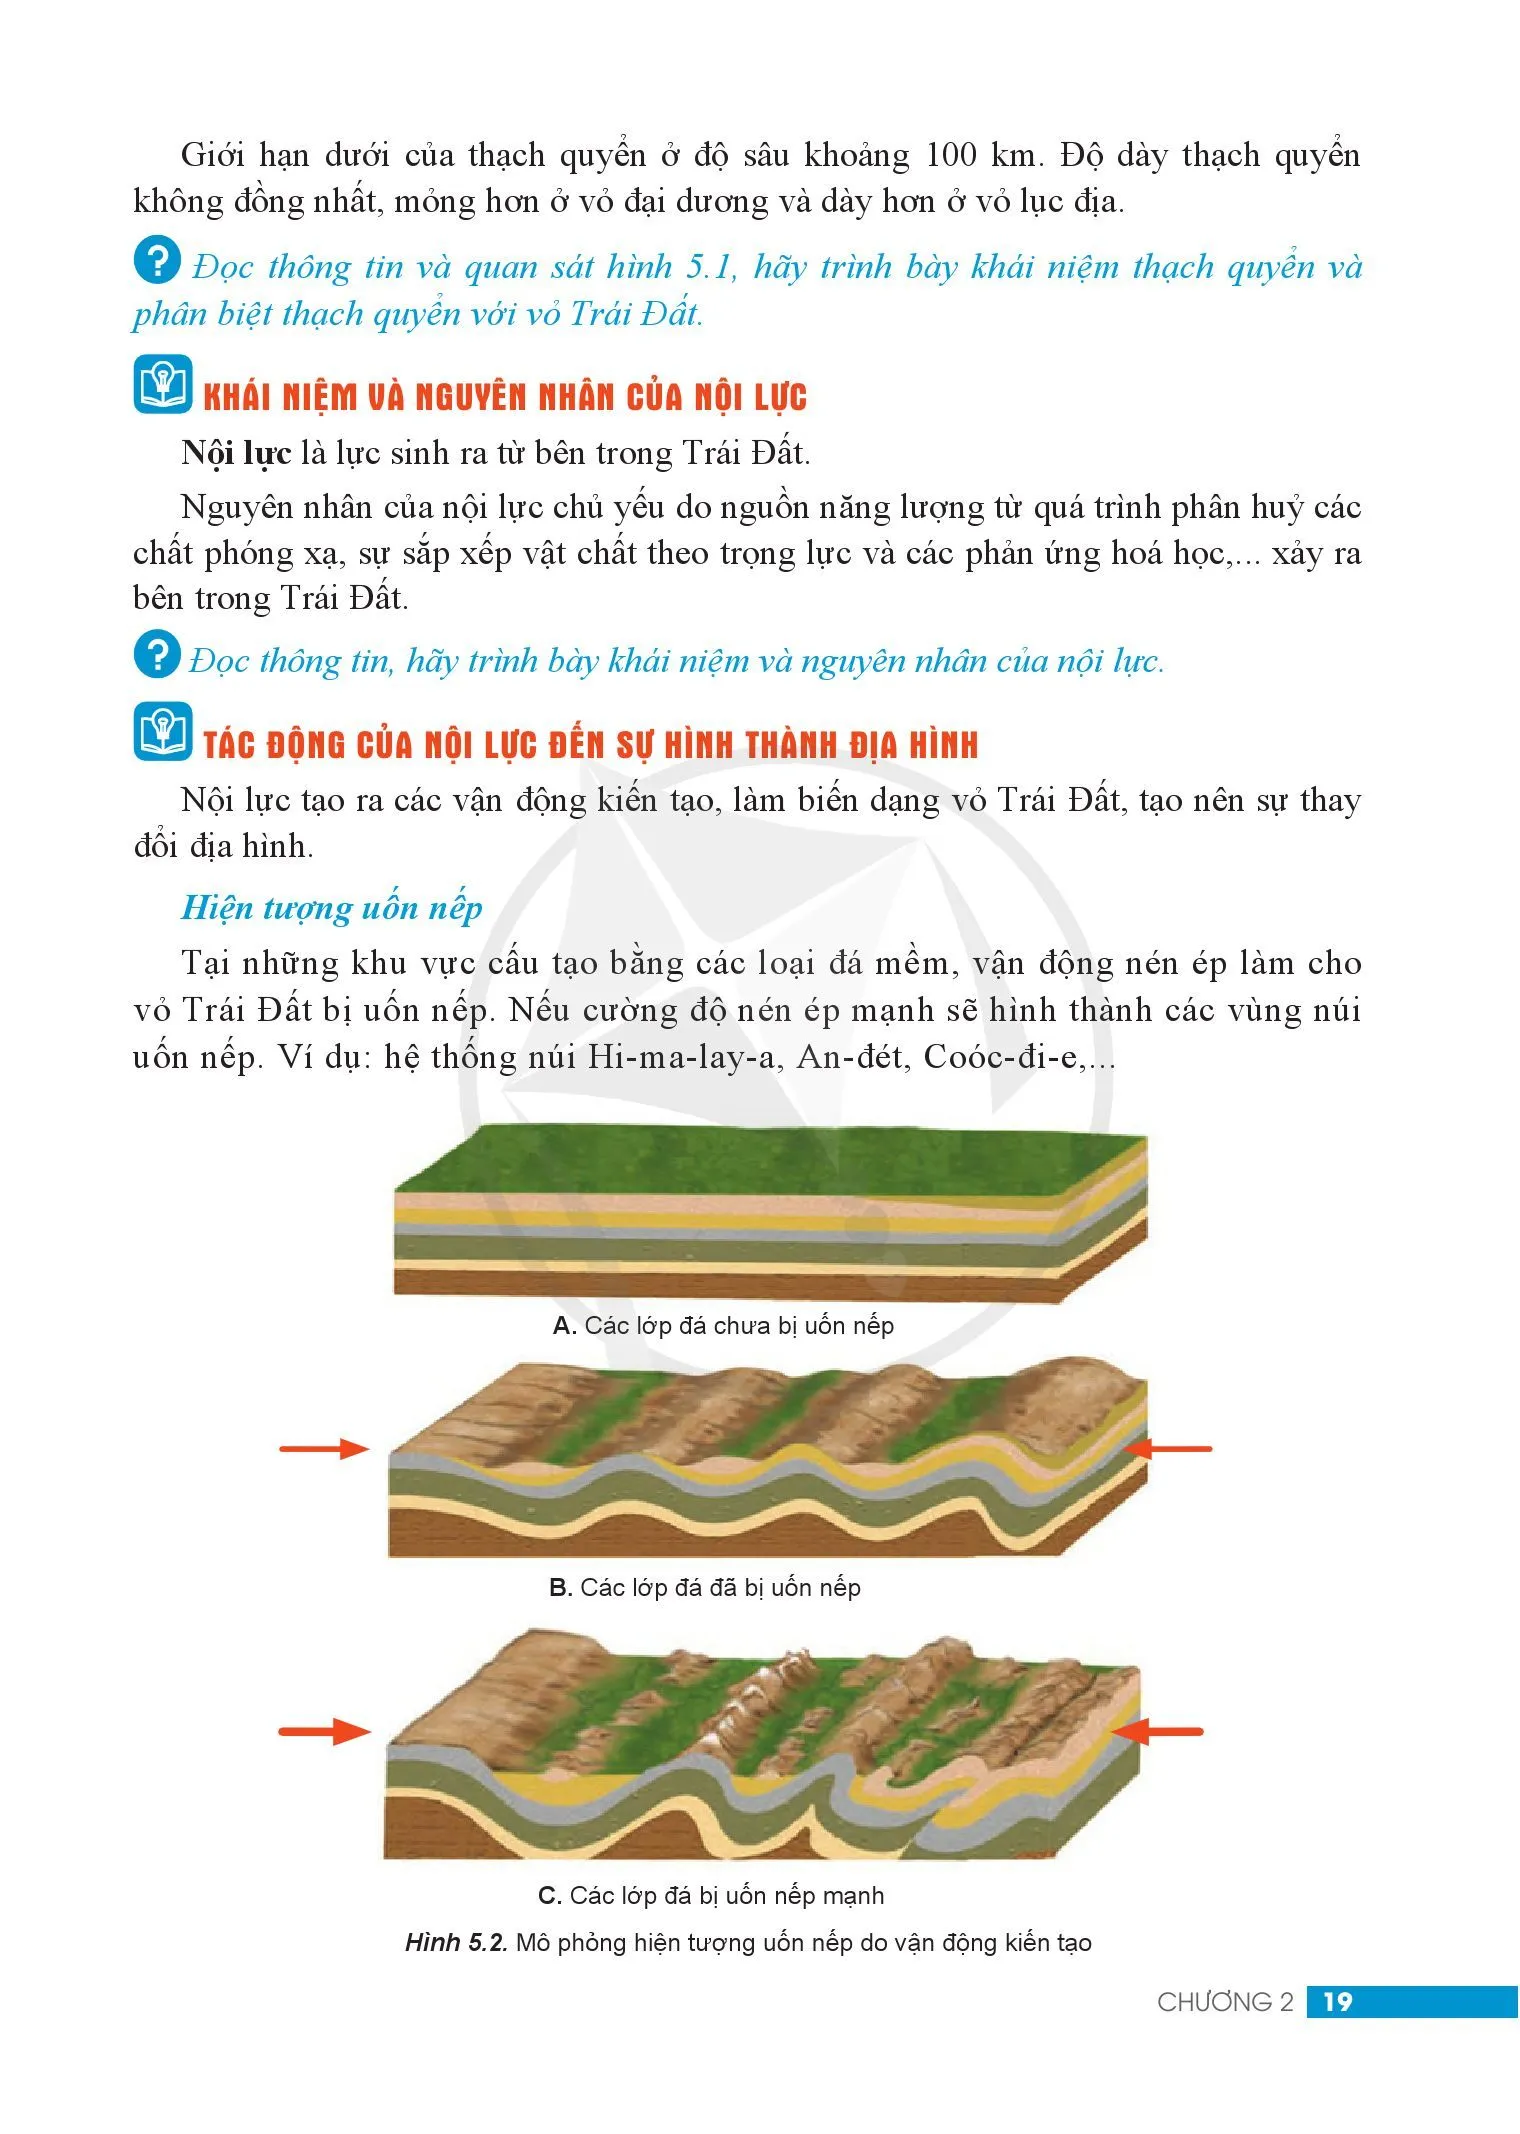 Bài 5. Thạch quyển. Nội lực và tác động của nội lực đến địa hình bề mặt Trái Đất